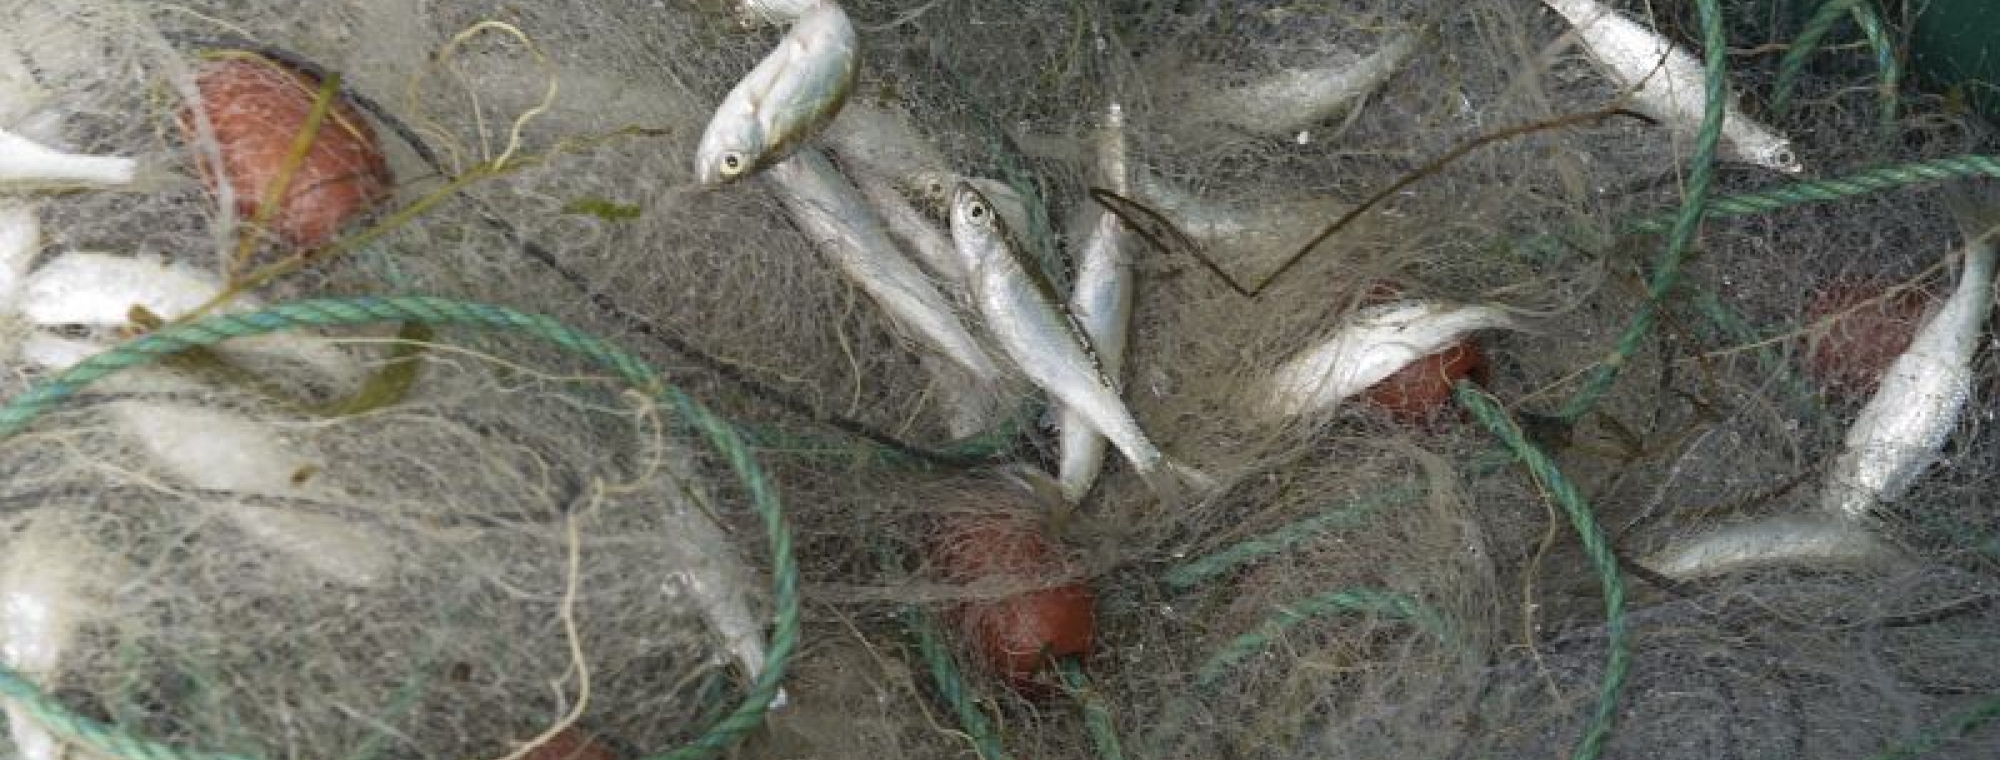 Suivi des alosons dans la Garonne en Lot-et-Garonne, LIFE alose, pêche du 18 Juillet 2011 : pêche de jour au filet araignée